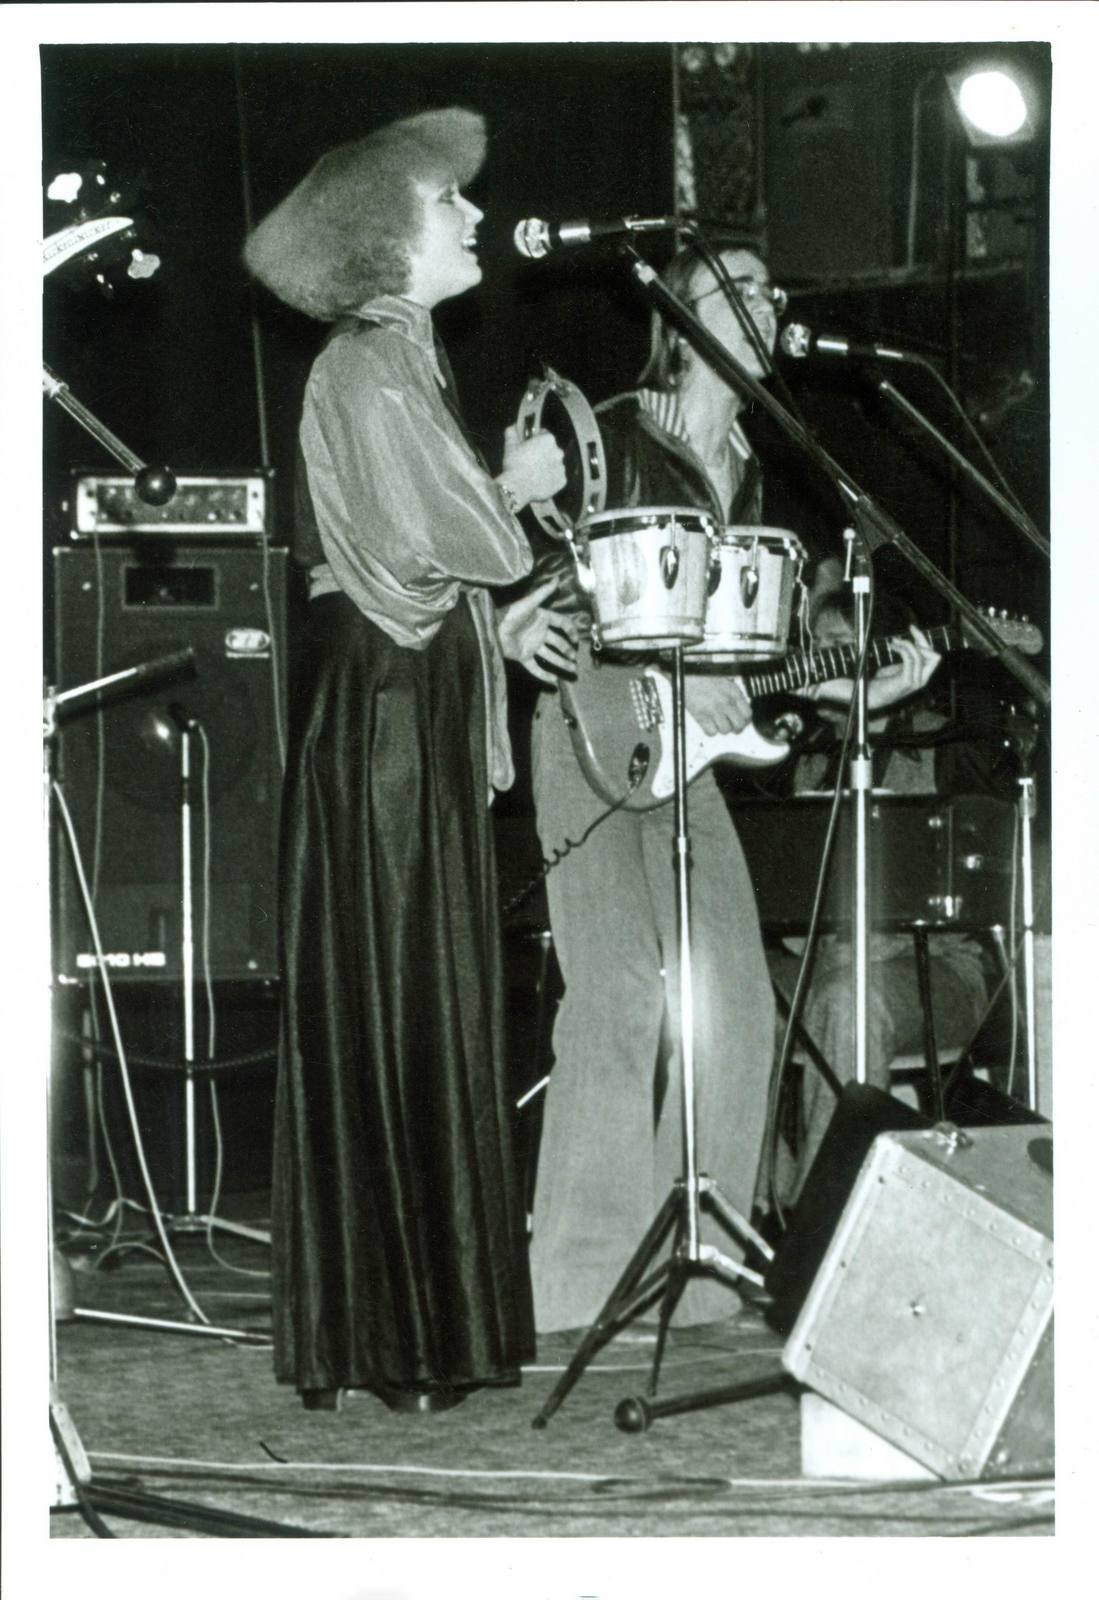 1978 V tomto roce se zúčastnili Bratislavské lyry s písní Děvčata.